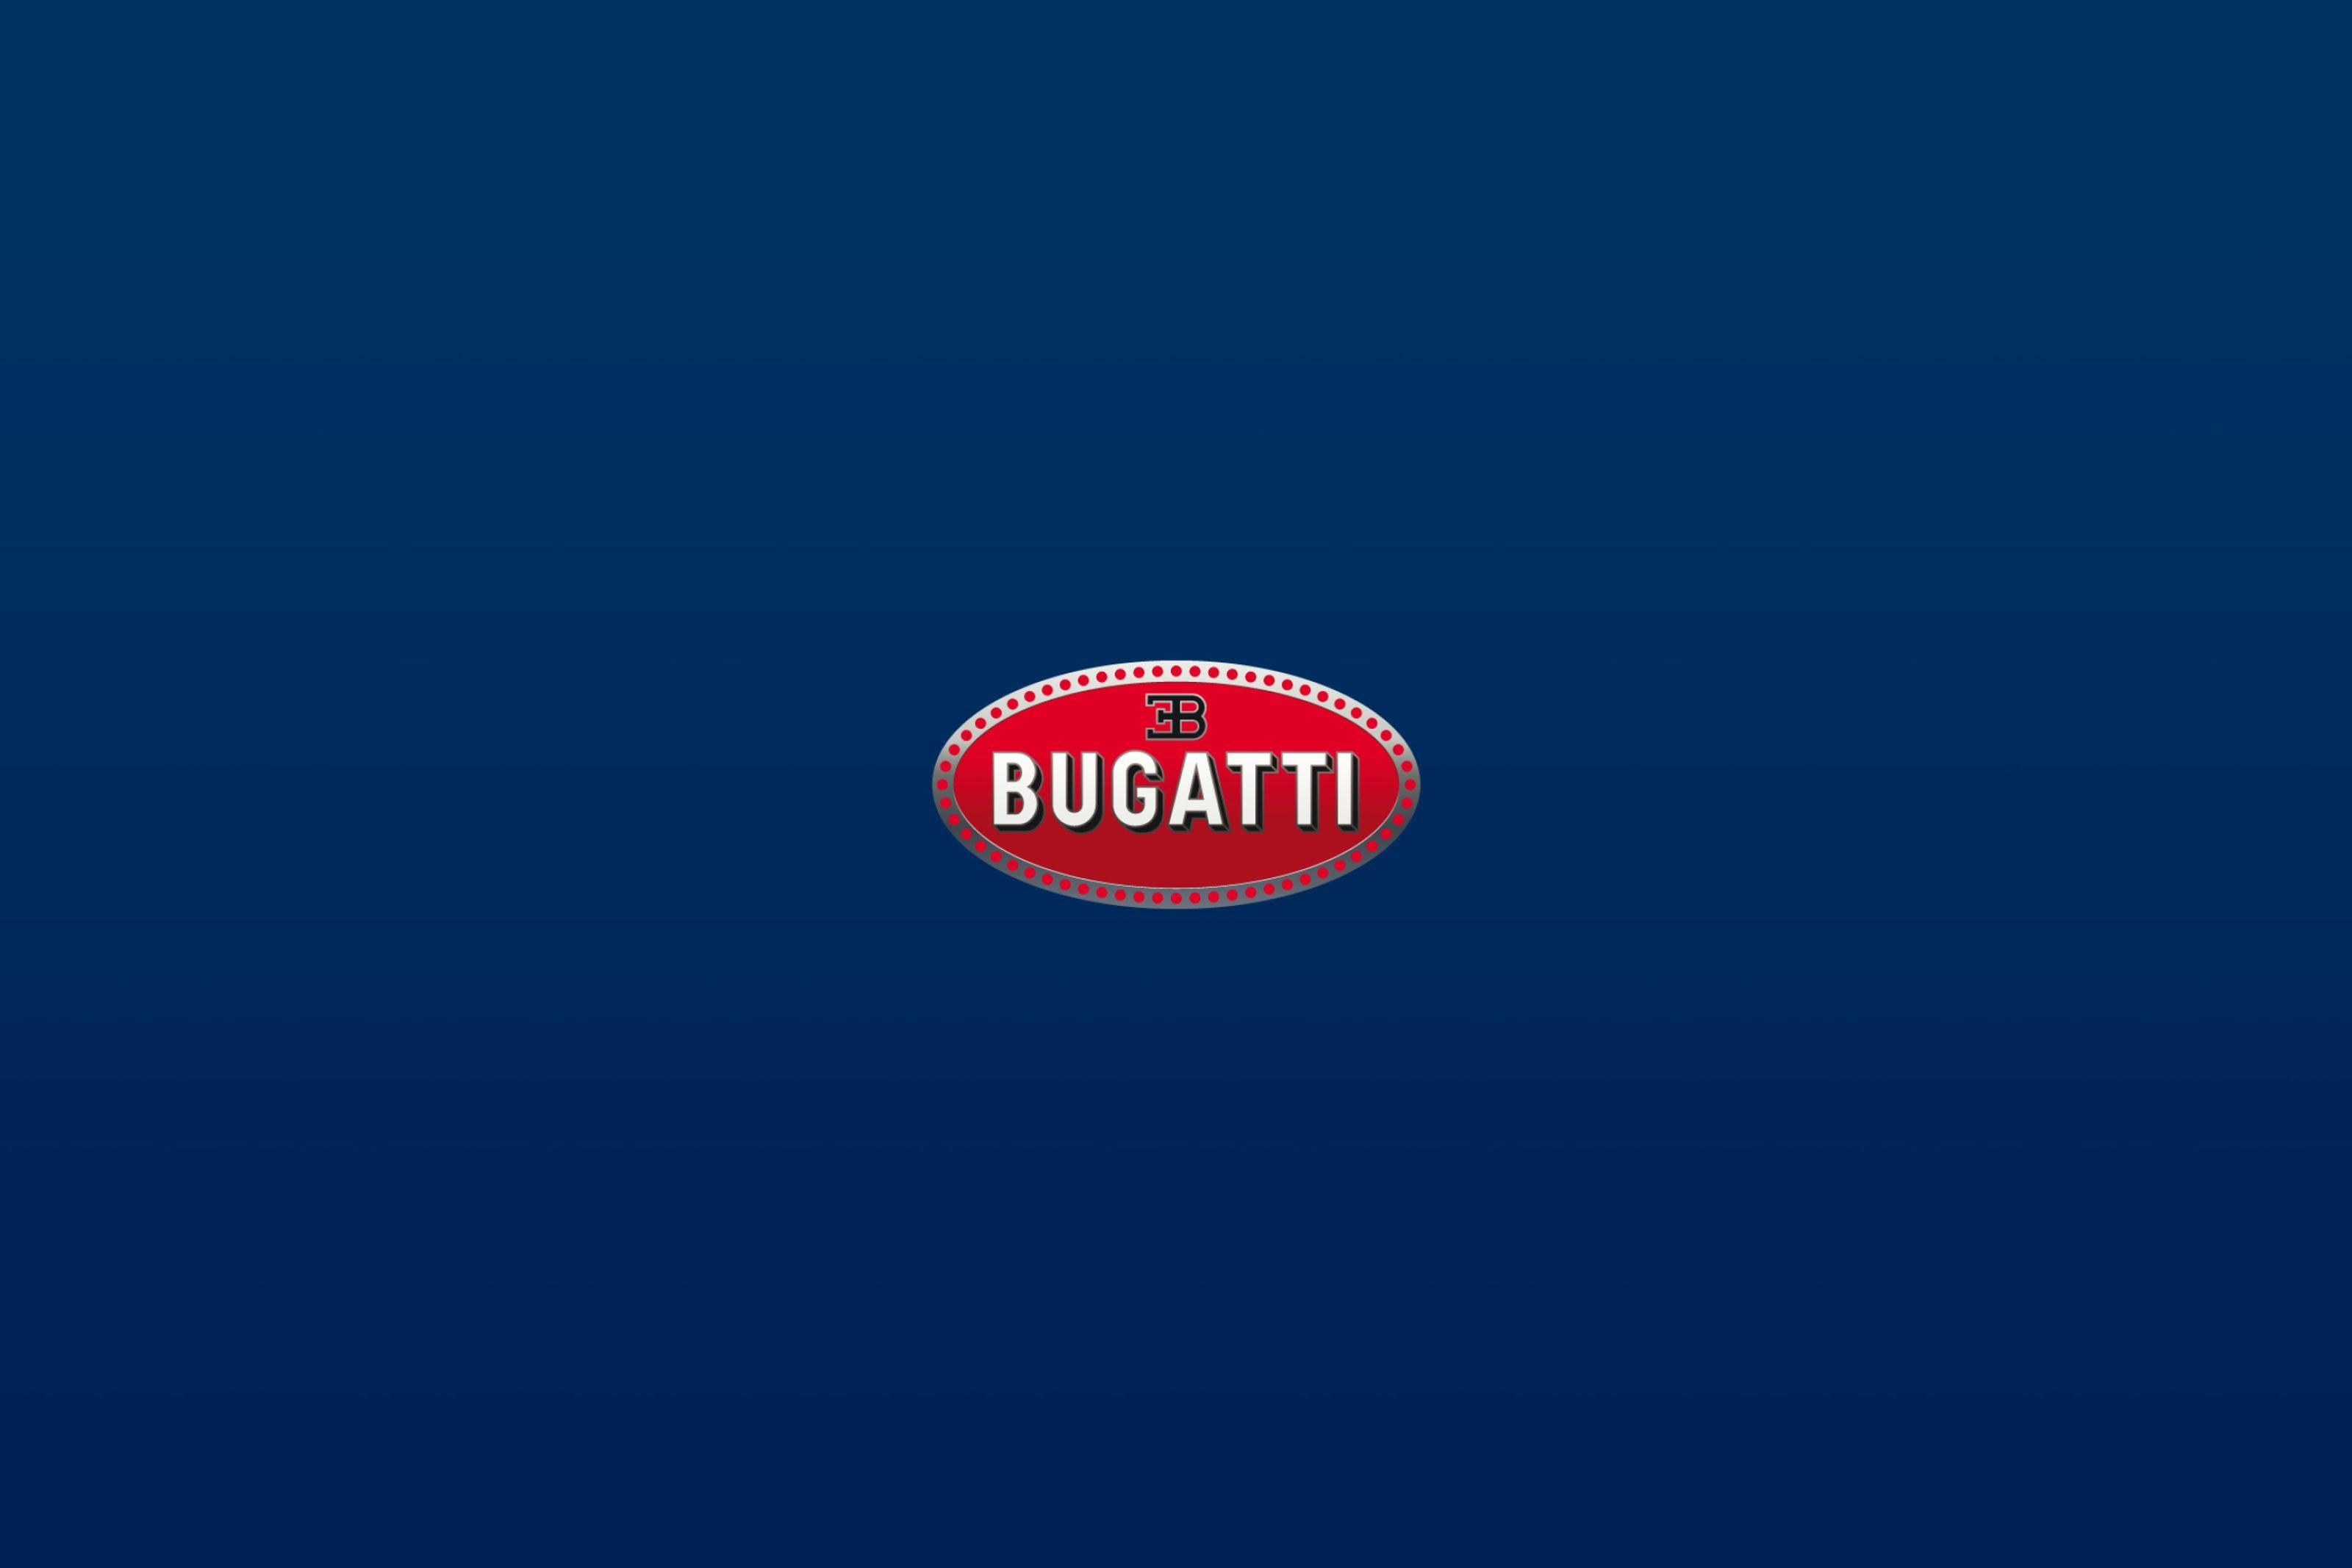 Salon Rétromobile: Bugatti celebrates 80th Anniversary of the Type 59 Grand Prix